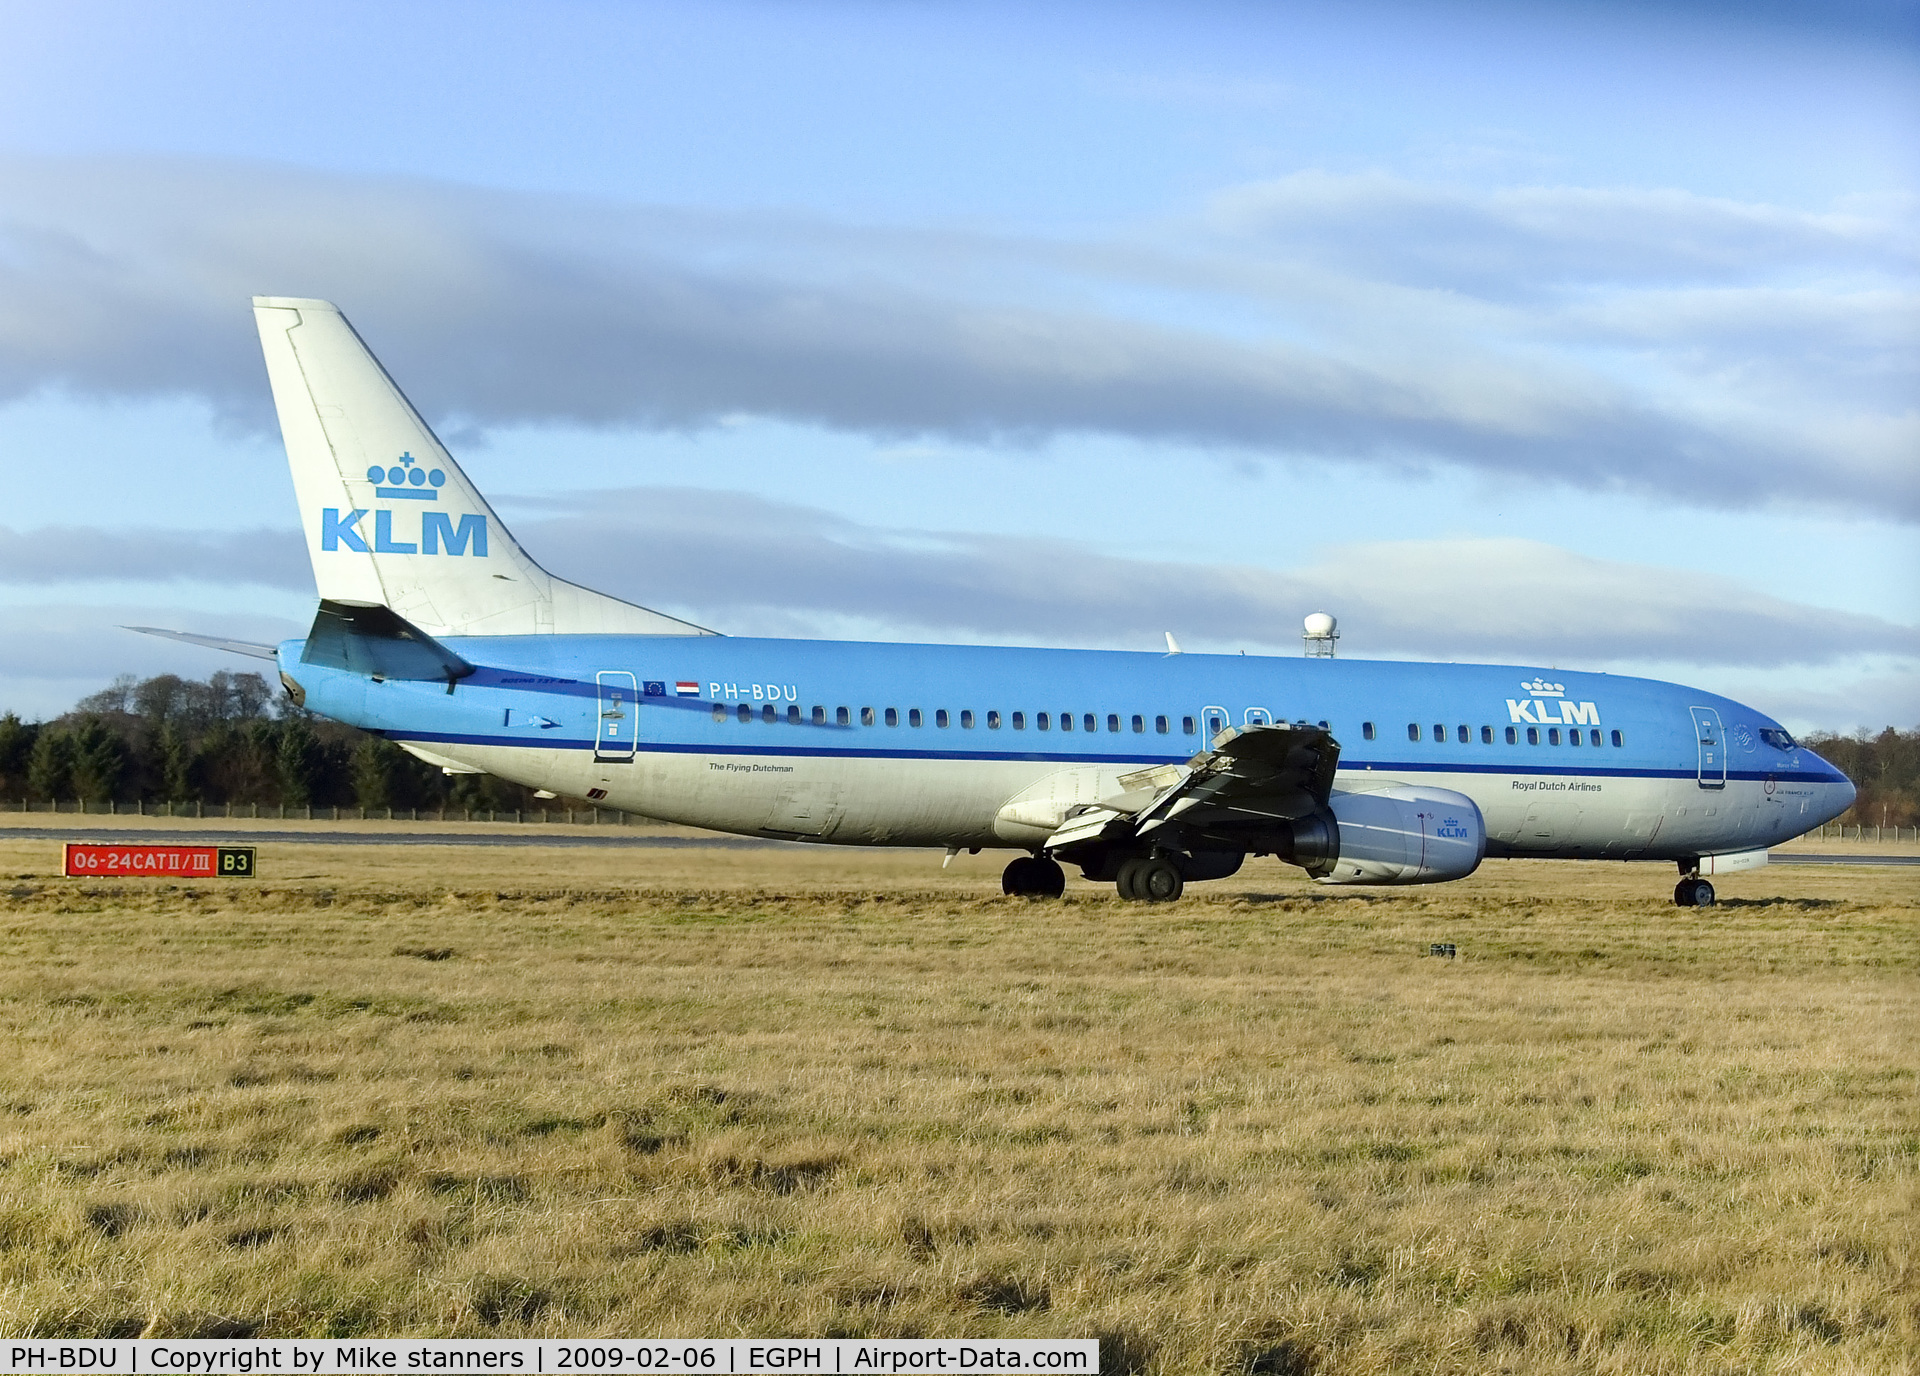 PH-BDU, 1990 Boeing 737-406 C/N 24857, FLT KLM1285 Arriving at Edinburgh airport